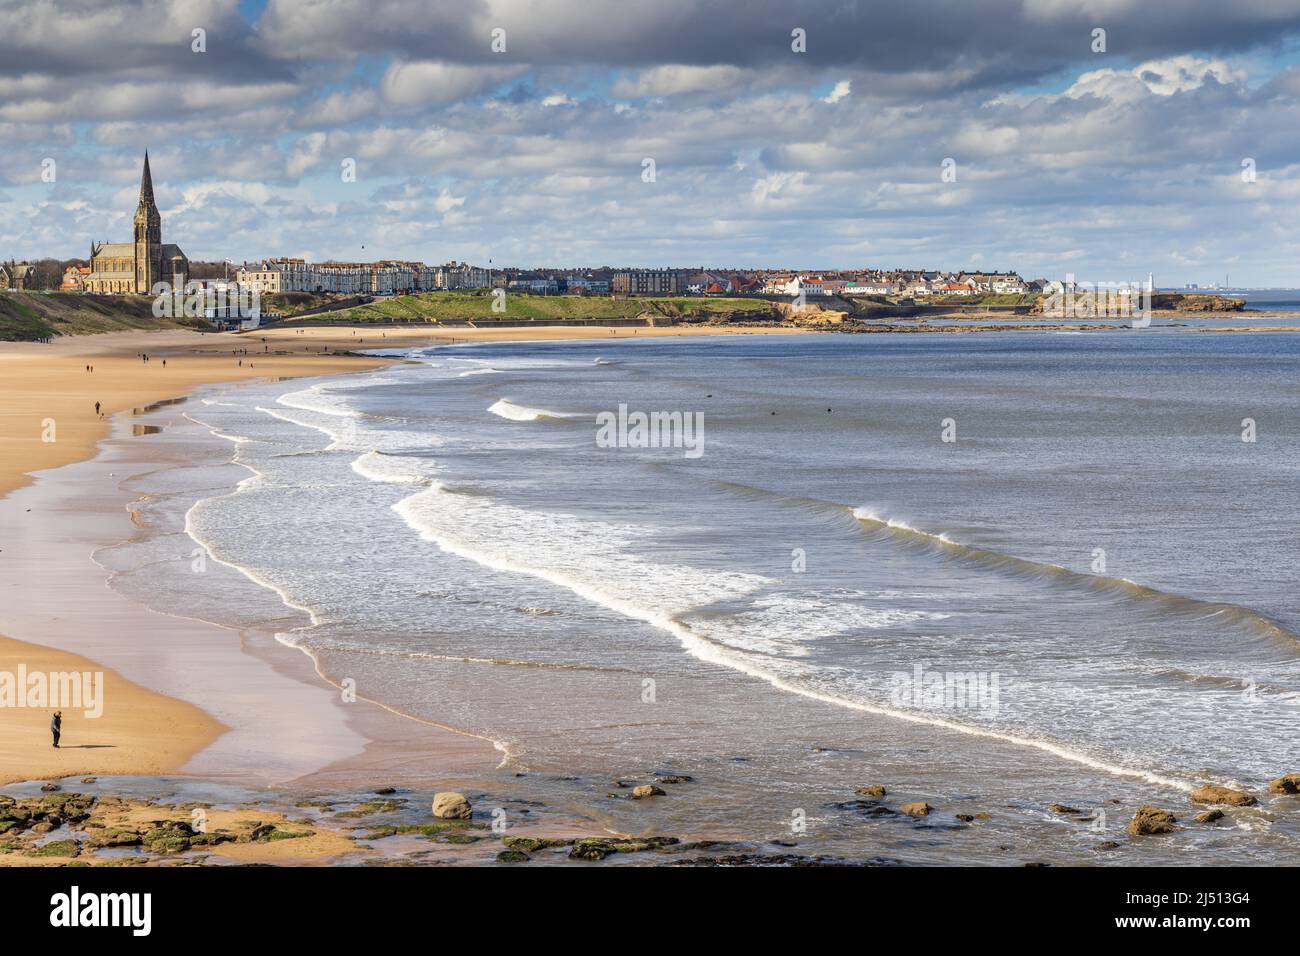 Spiaggia di Long Sands a Tynemouth in una giornata di primavera, con la chiesa di St George a Cullercoats in lontananza, Tyne and Wear, Inghilterra, Regno Unito Foto Stock